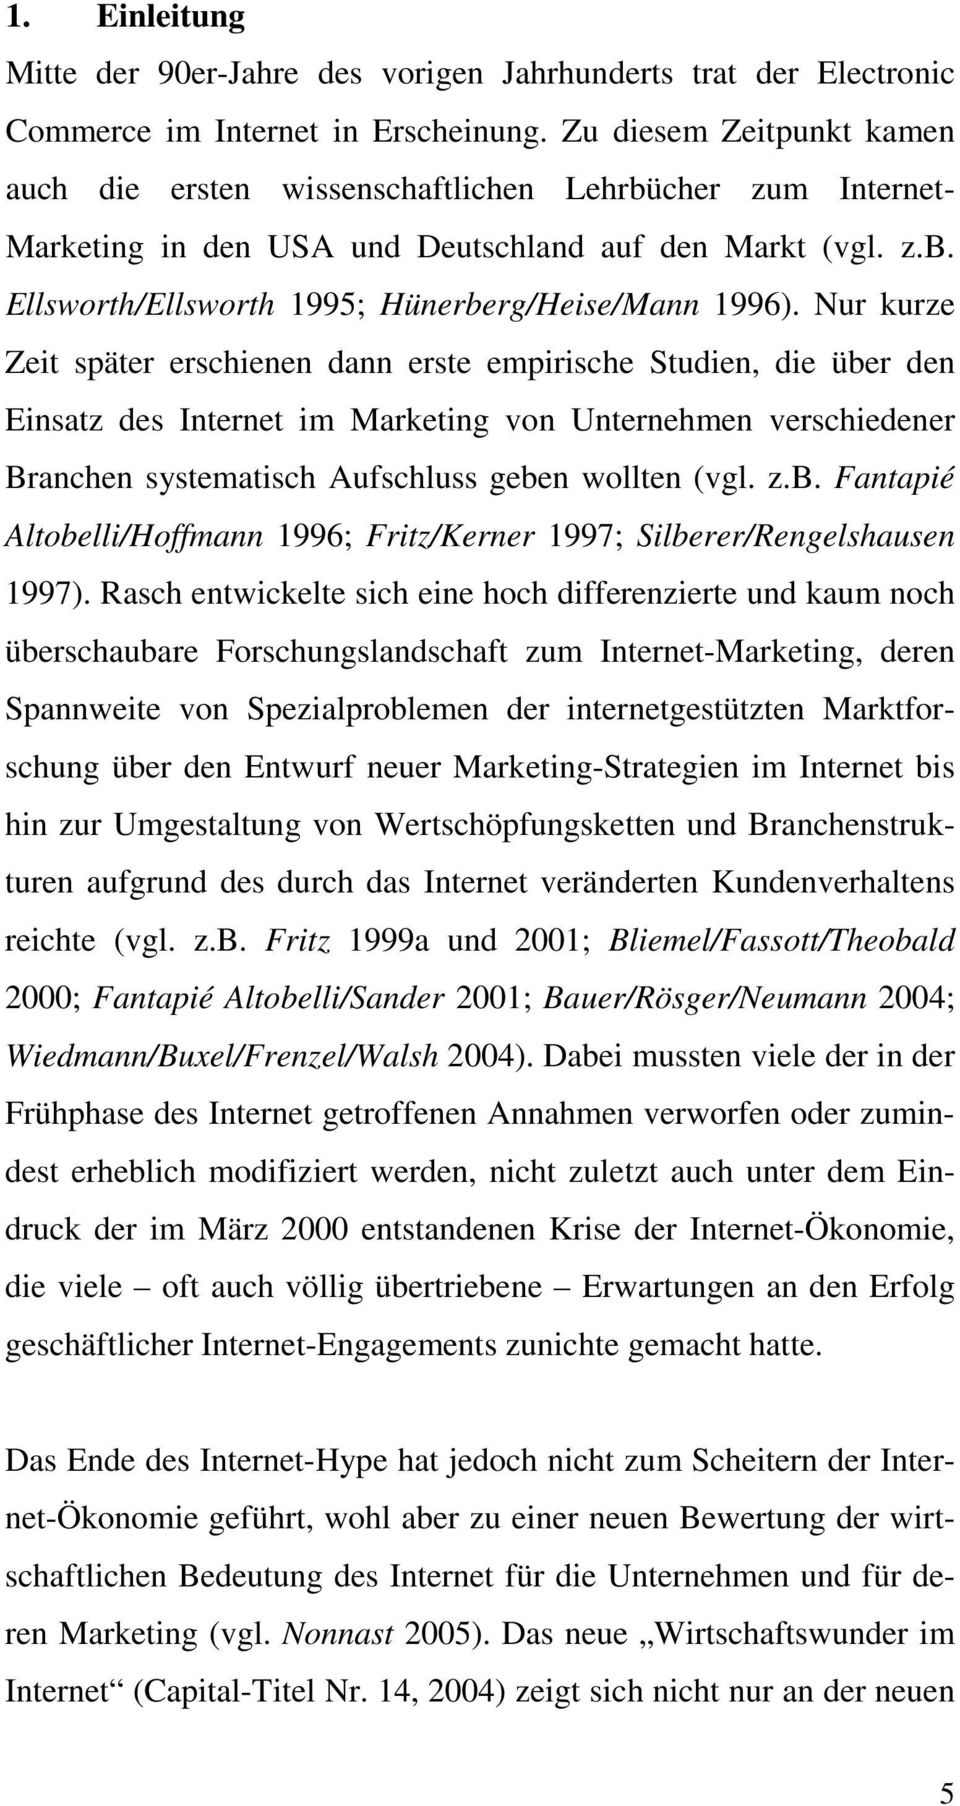 Nur kurze Zeit später erschienen dann erste empirische Studien, die über den Einsatz des Internet im Marketing von Unternehmen verschiedener Branchen systematisch Aufschluss geben wollten (vgl. z.b. Fantapié Altobelli/Hoffmann 1996; Fritz/Kerner 1997; Silberer/Rengelshausen 1997).